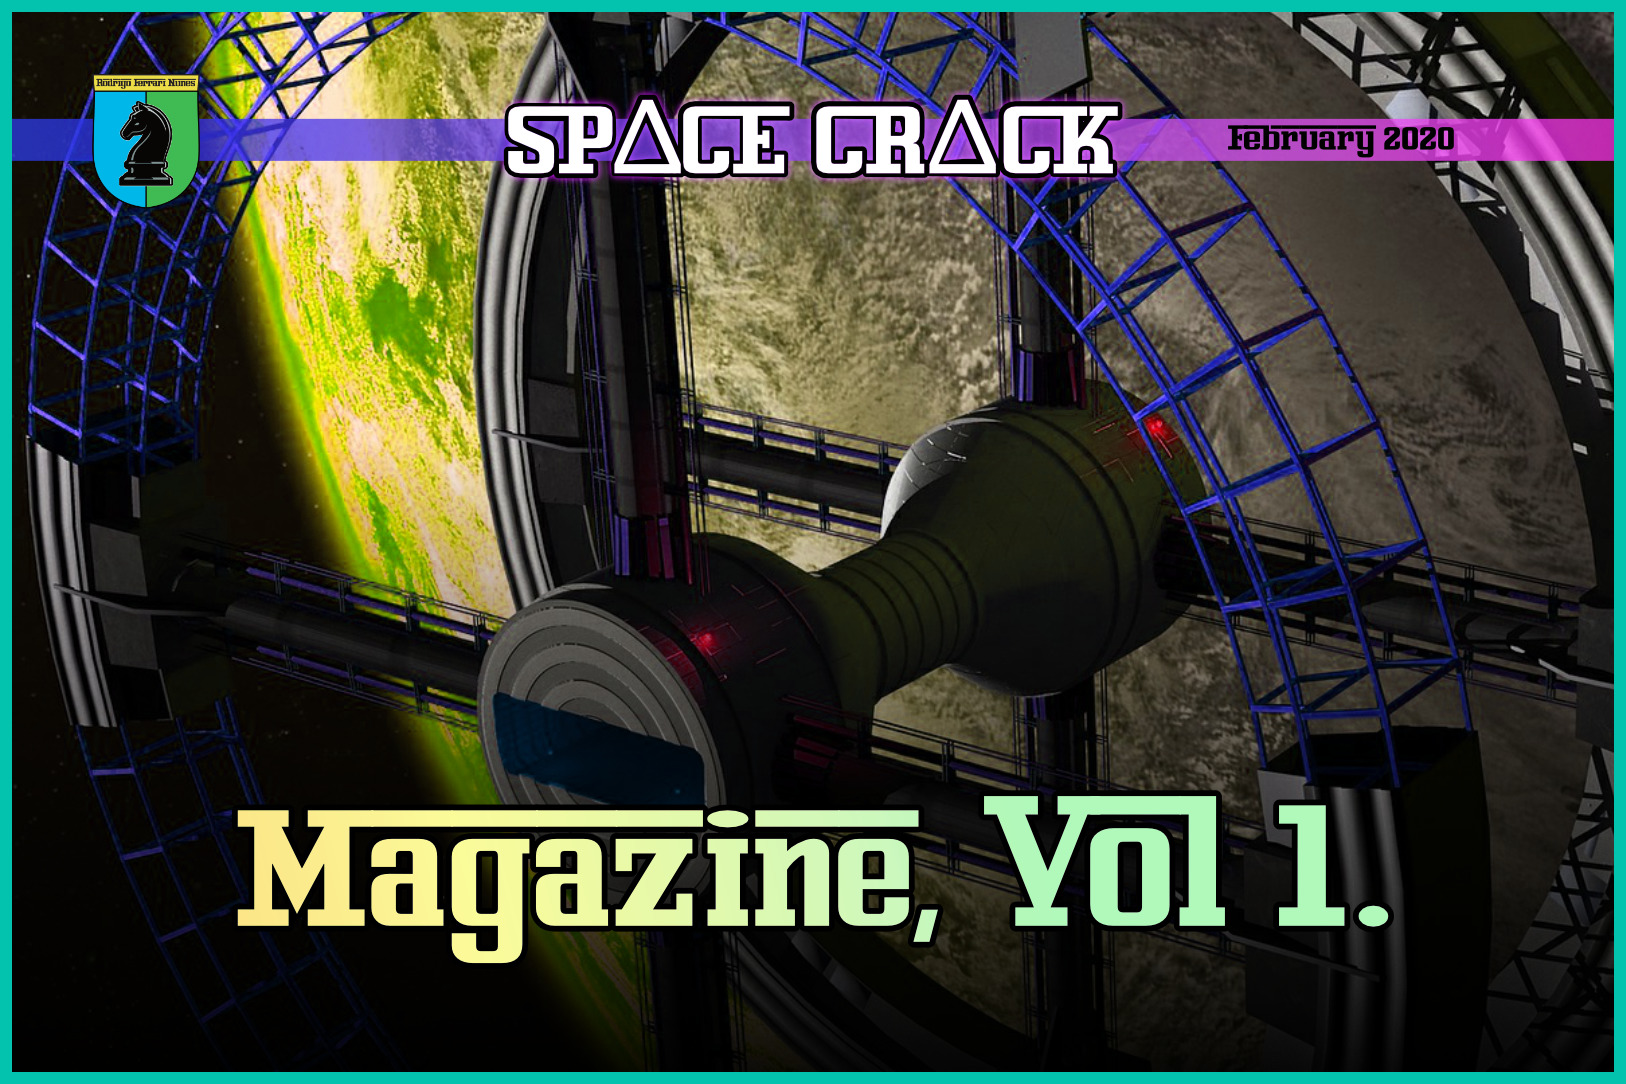 SPACE CRACK MAG, VOLUME 1: JAN/FEB 2020